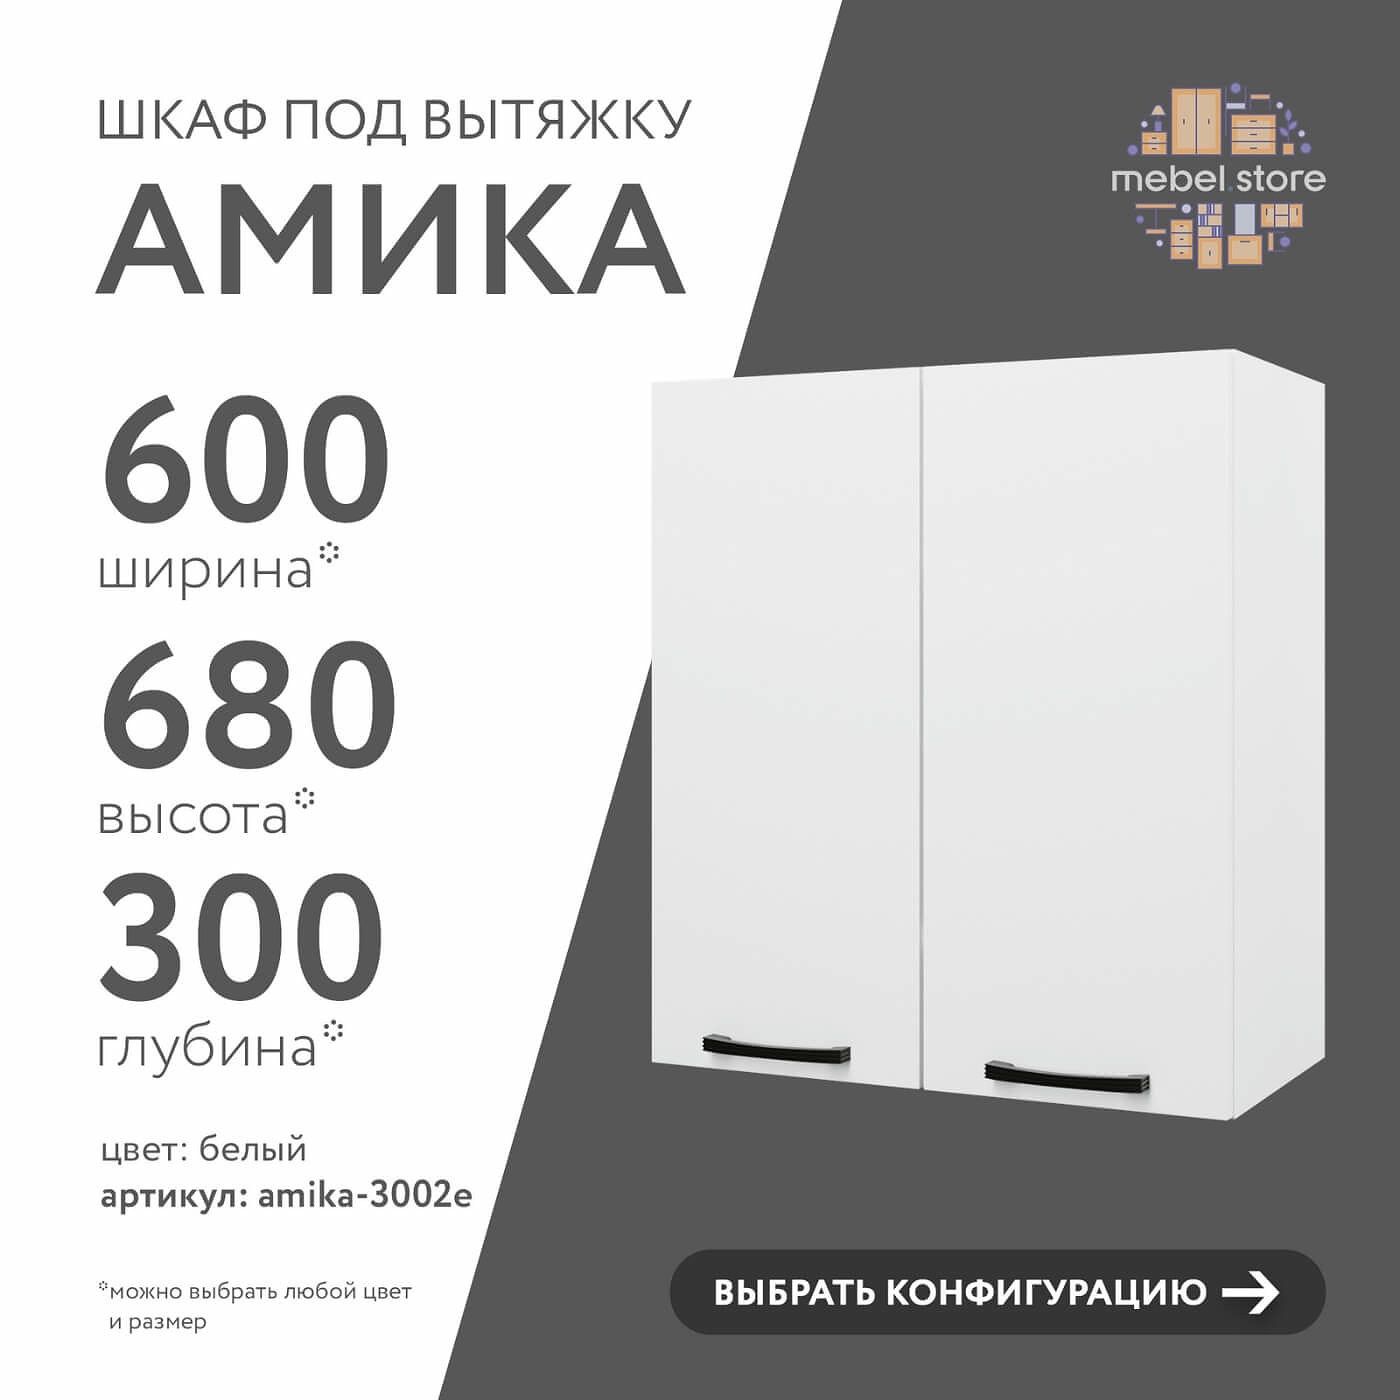 Шкаф под вытяжку Амика-3002e минимализм для кухни - фото 1 large